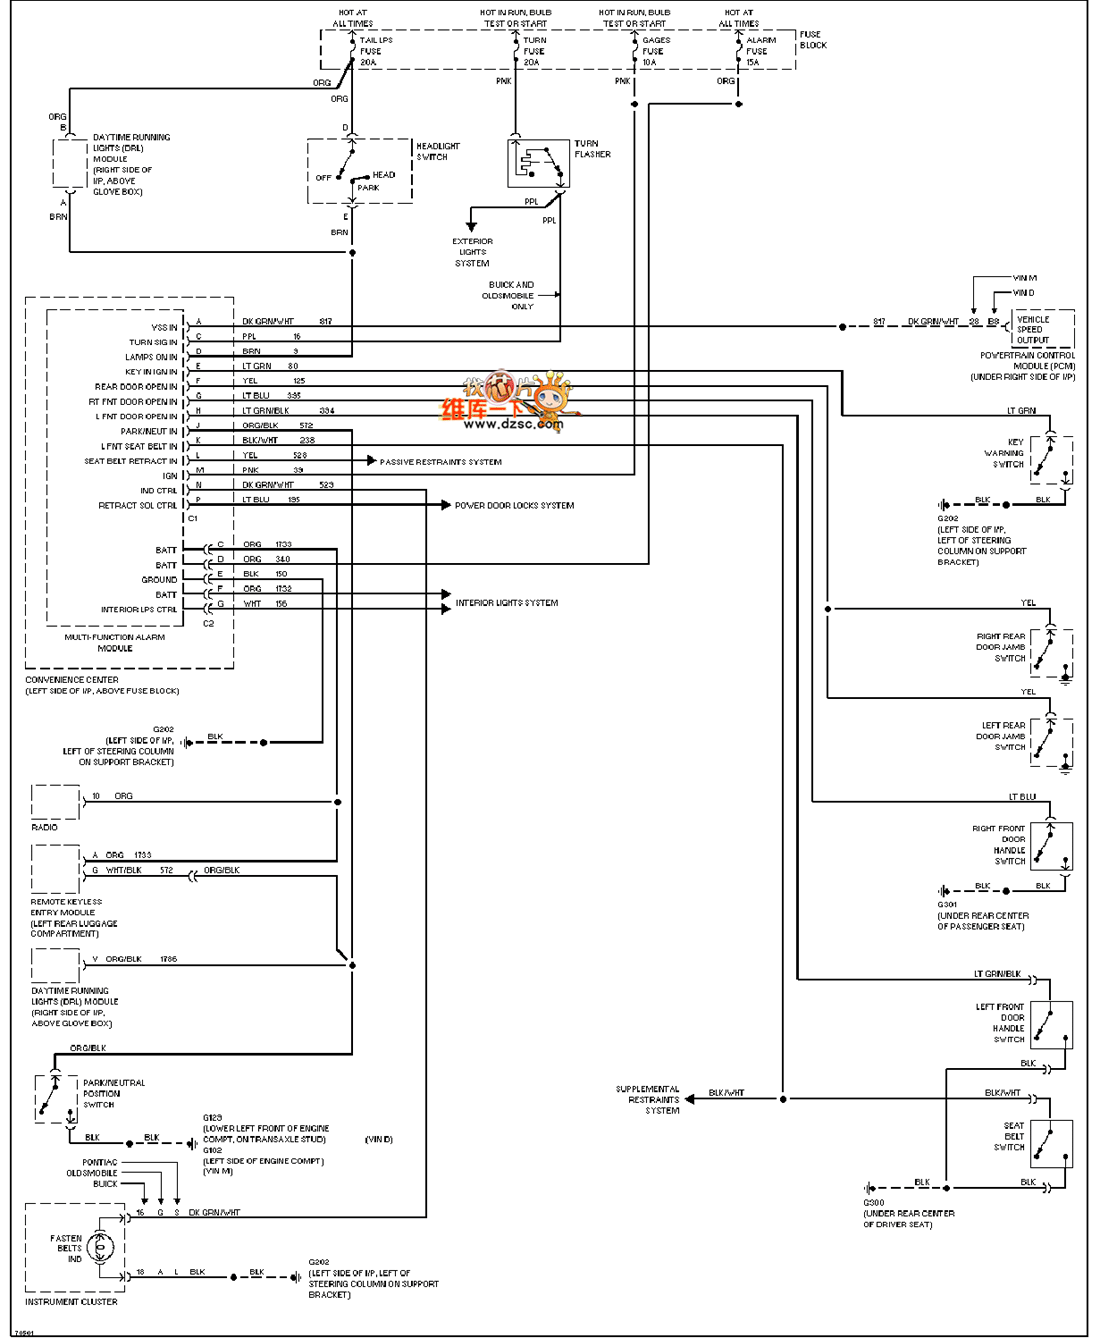 General 95 Oldsmobile ACHIEVA alarm system circuit diagram